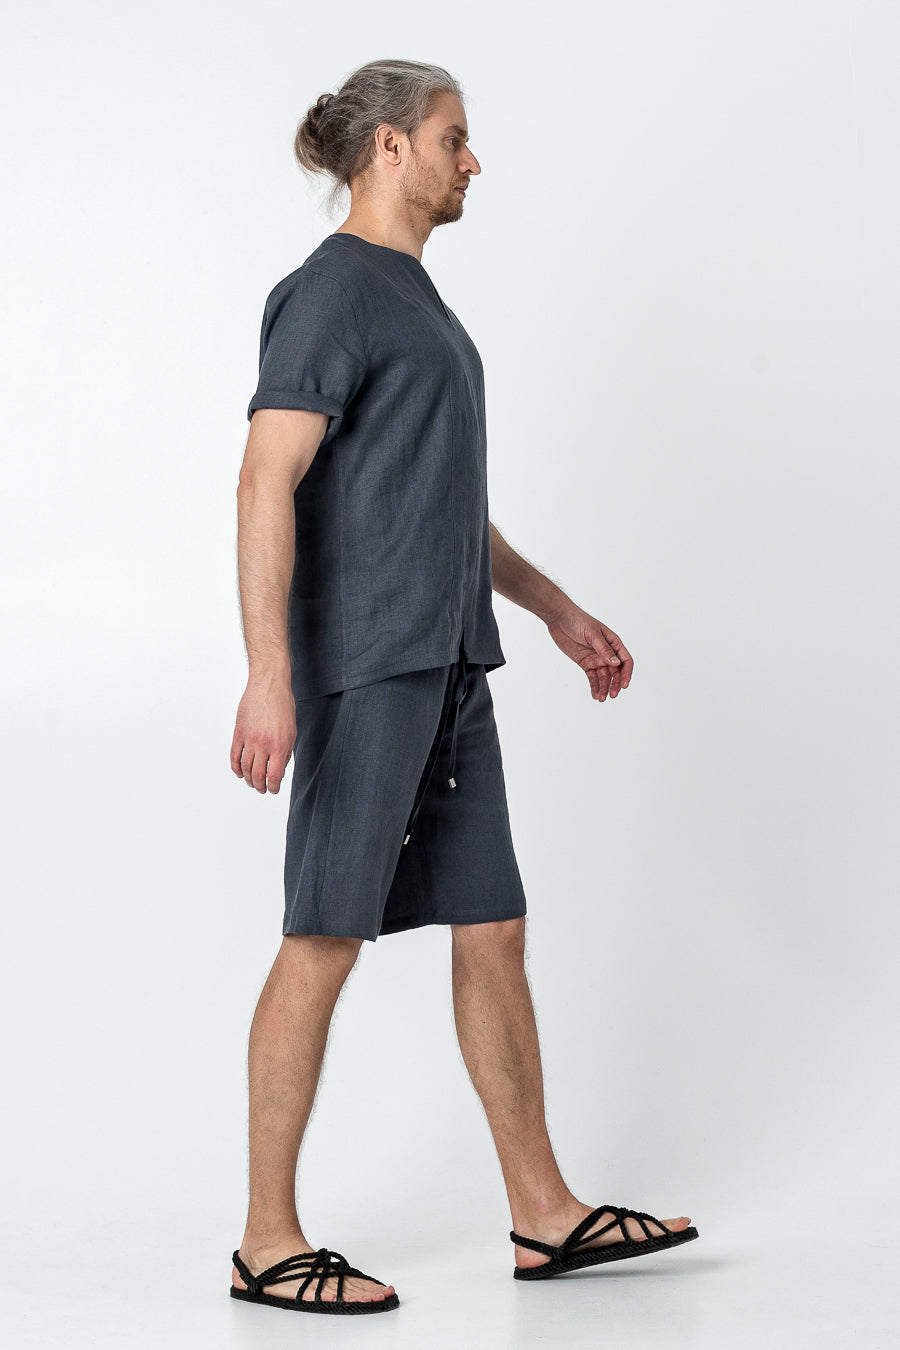 YOSHI | Mens linen drawstring shorts - Mezzoroni